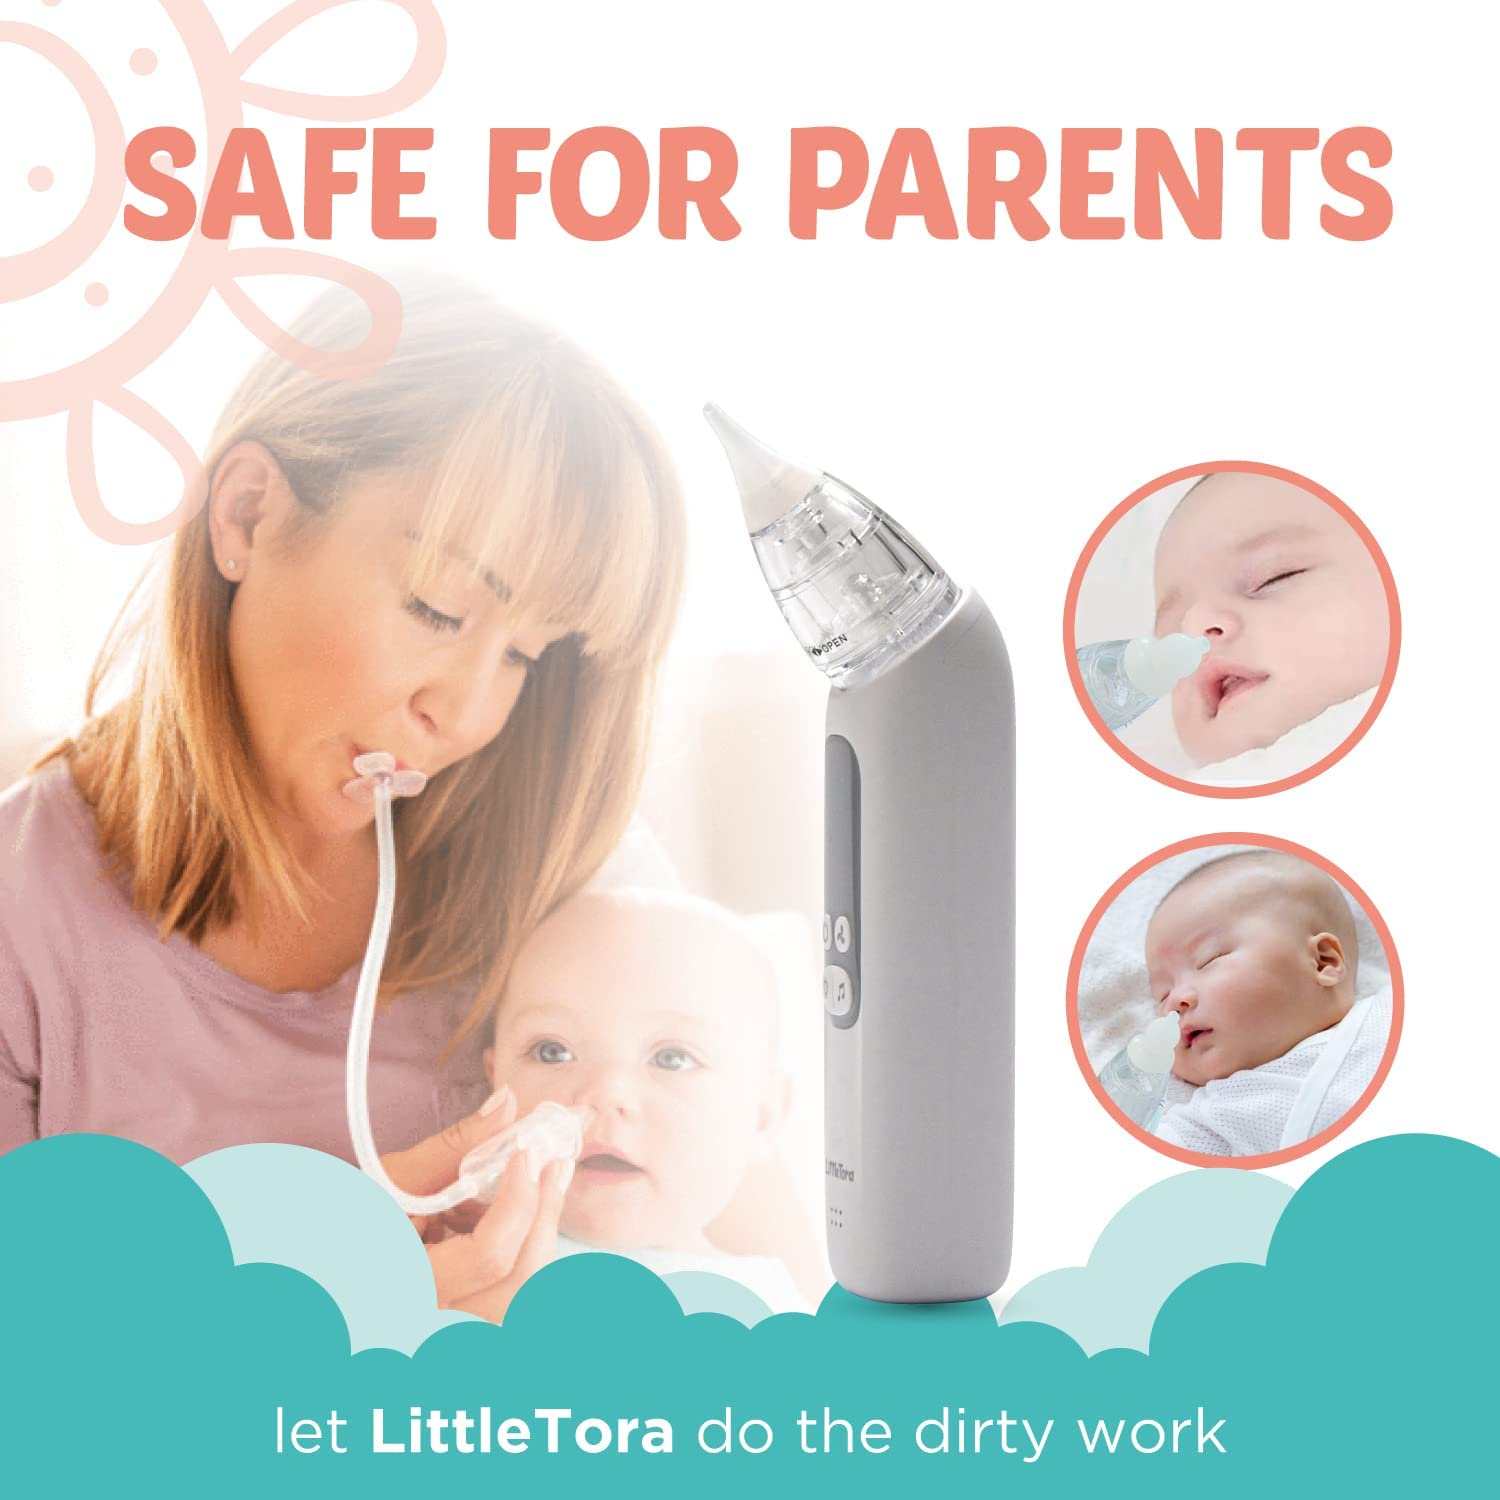 Baby Nose Cleaner Vacuum, Nasal Aspirator Baby, Baby Mucus Sucker